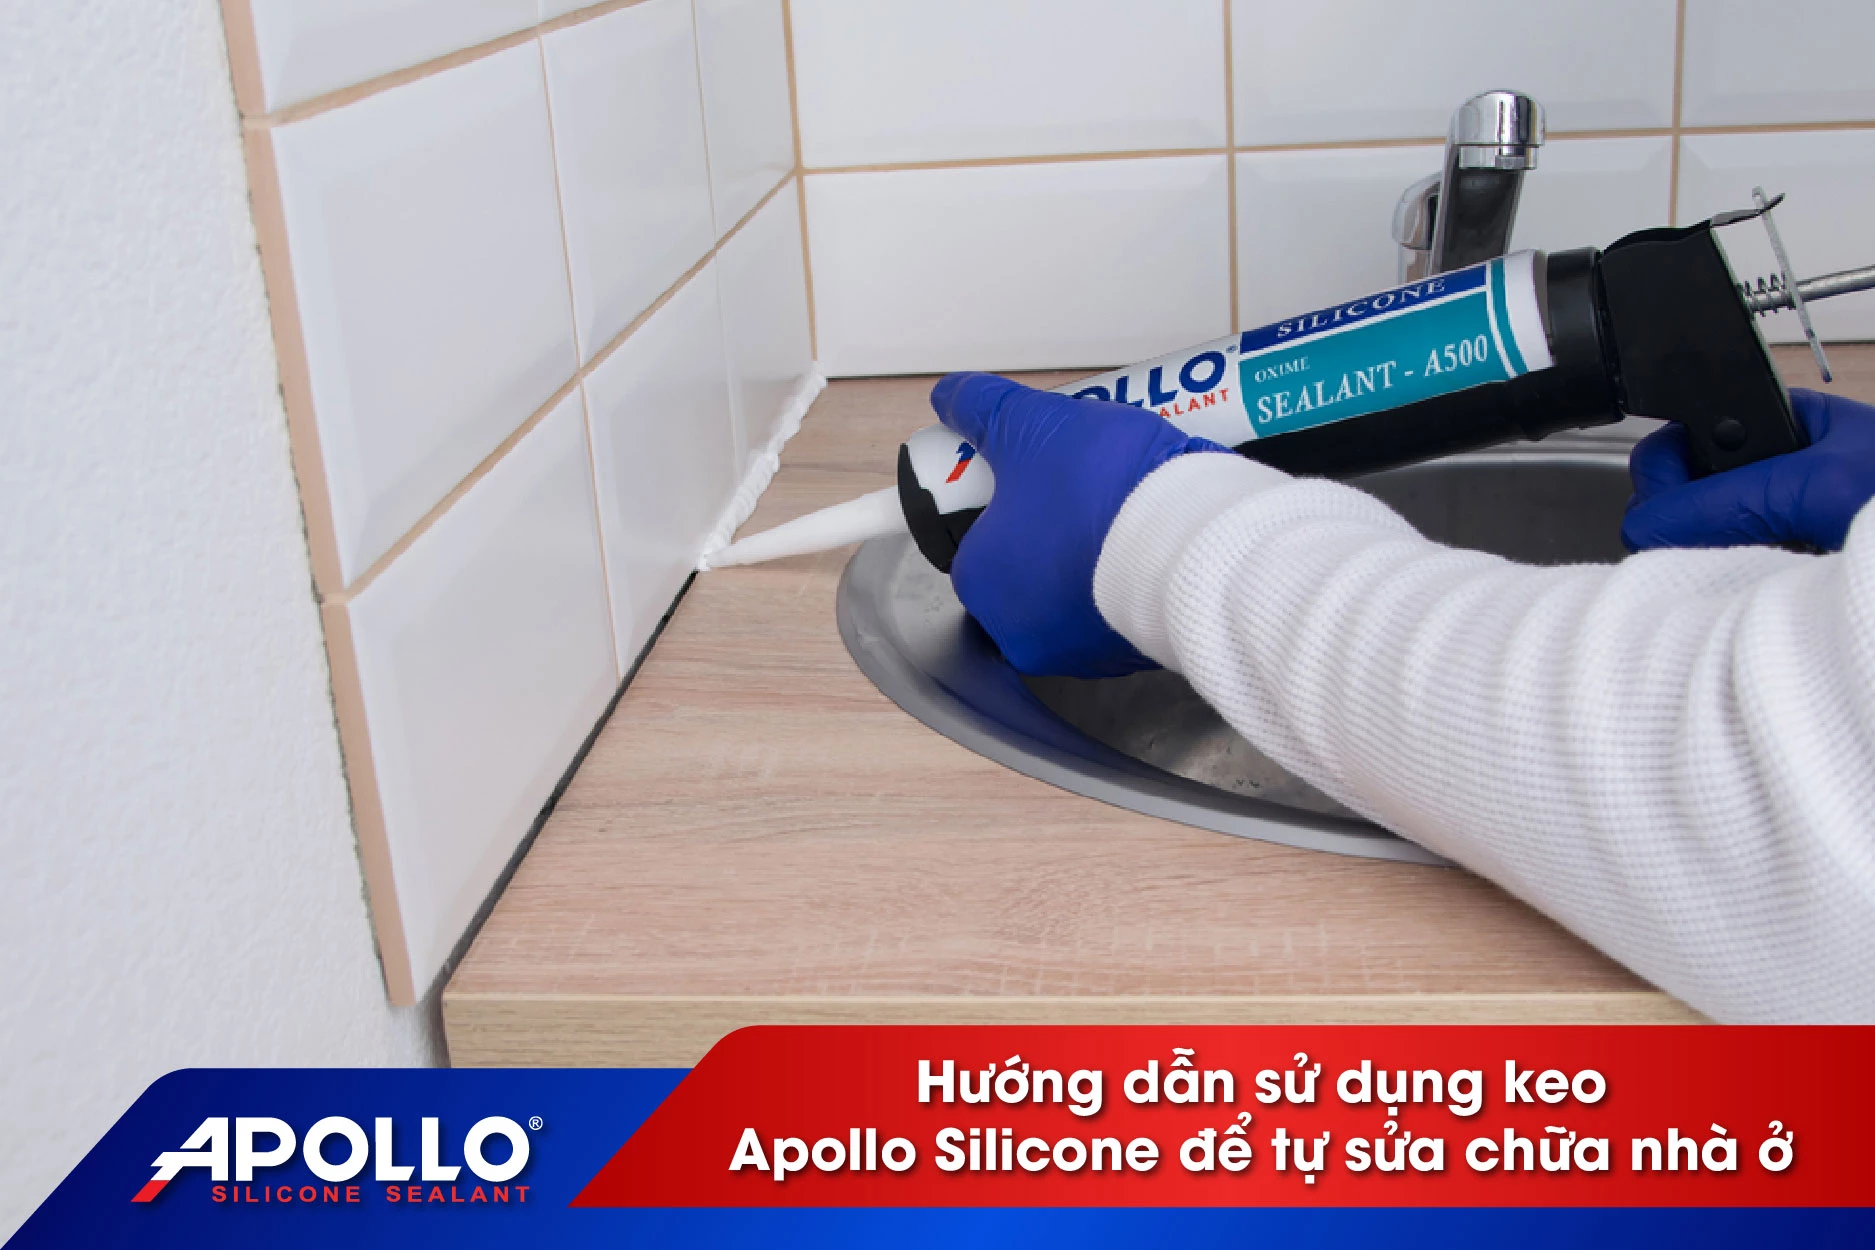 Hướng dẫn sử dụng keo Apollo Silicone để tự sửa chữa nhà ở đón tết